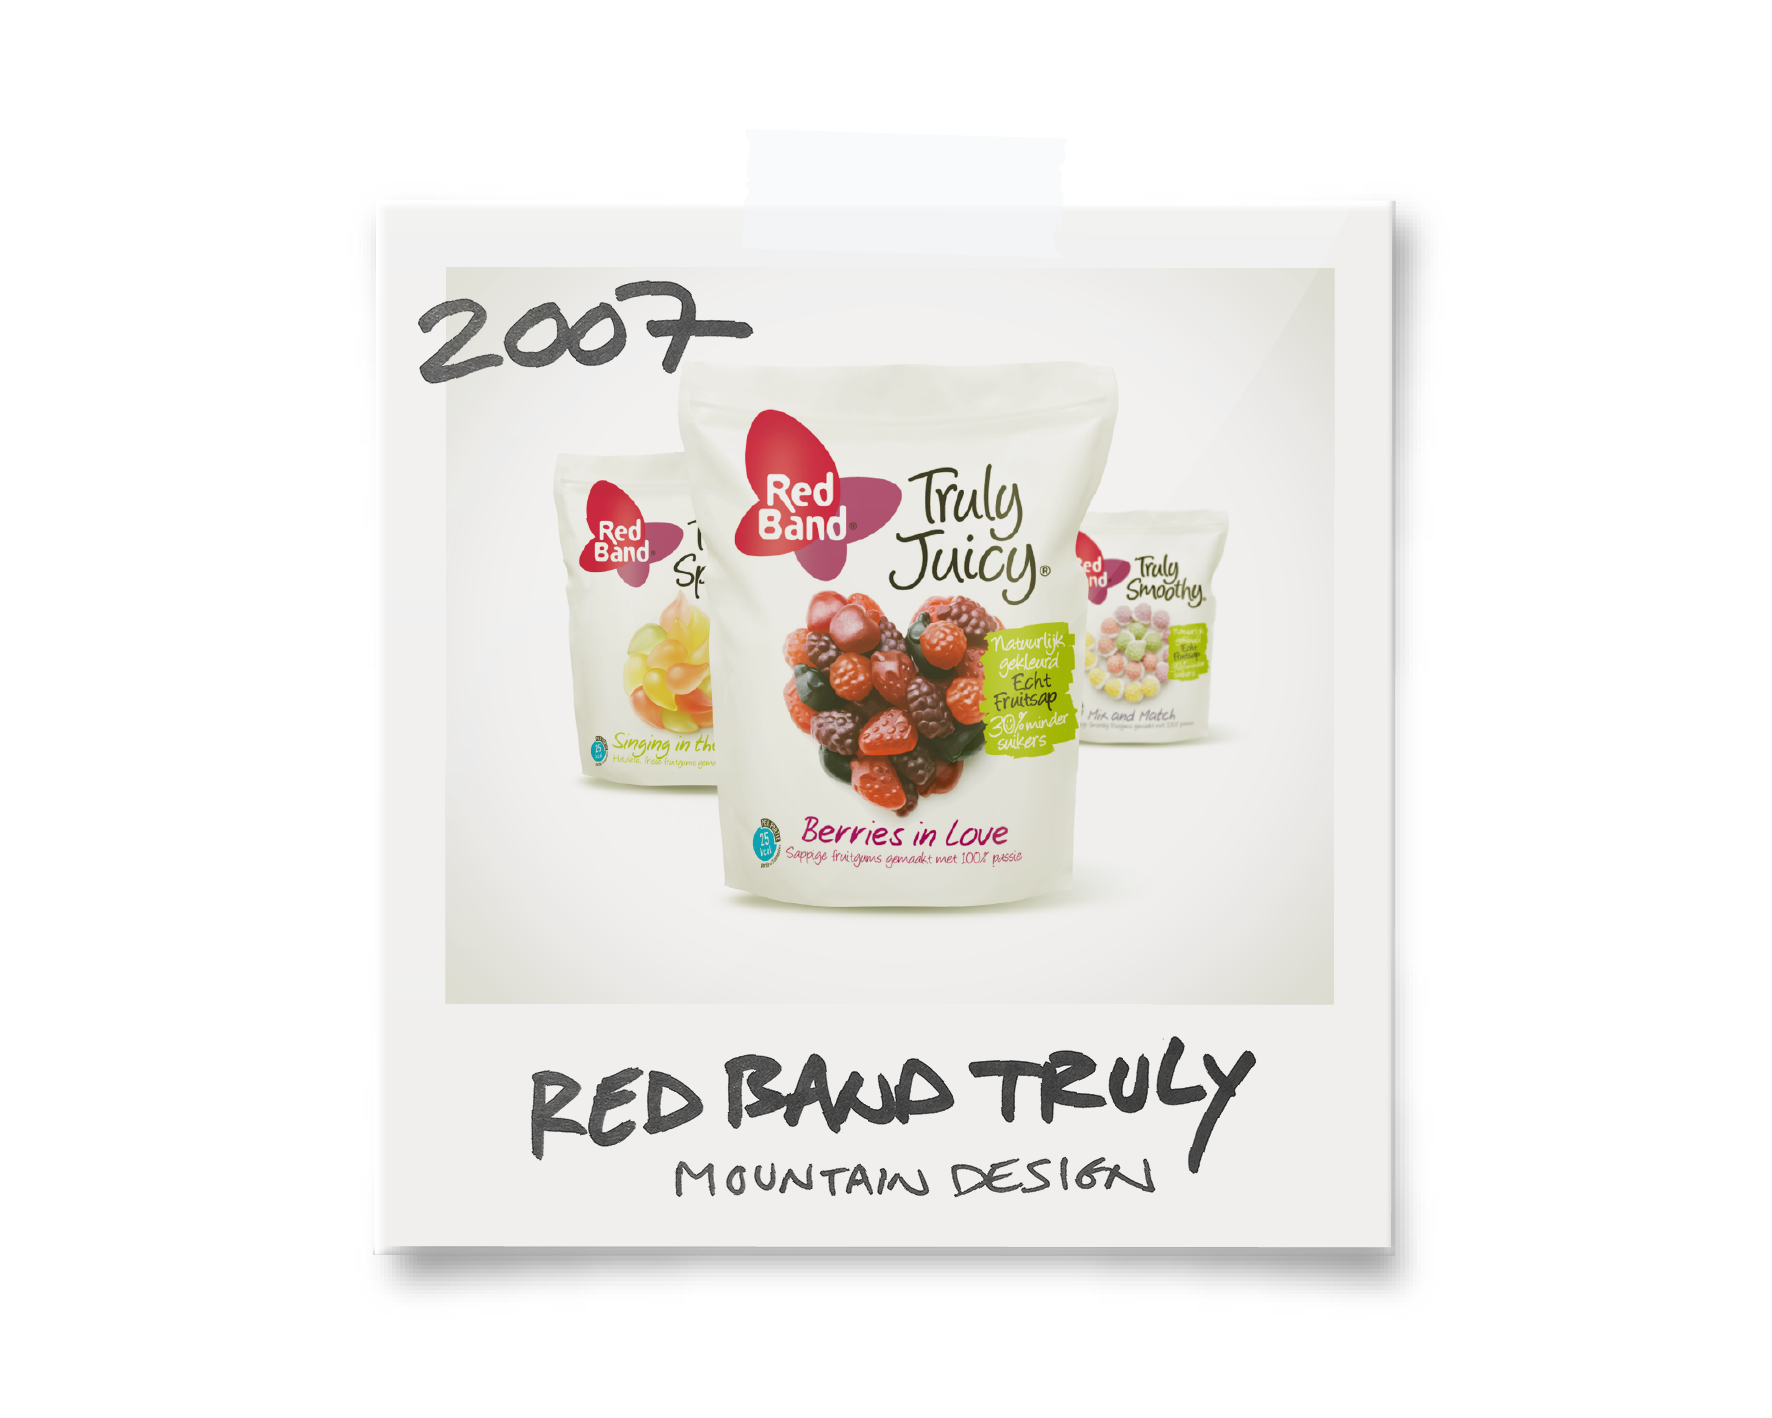 Red Band Truly 2007 op website_Tekengebied 1.png